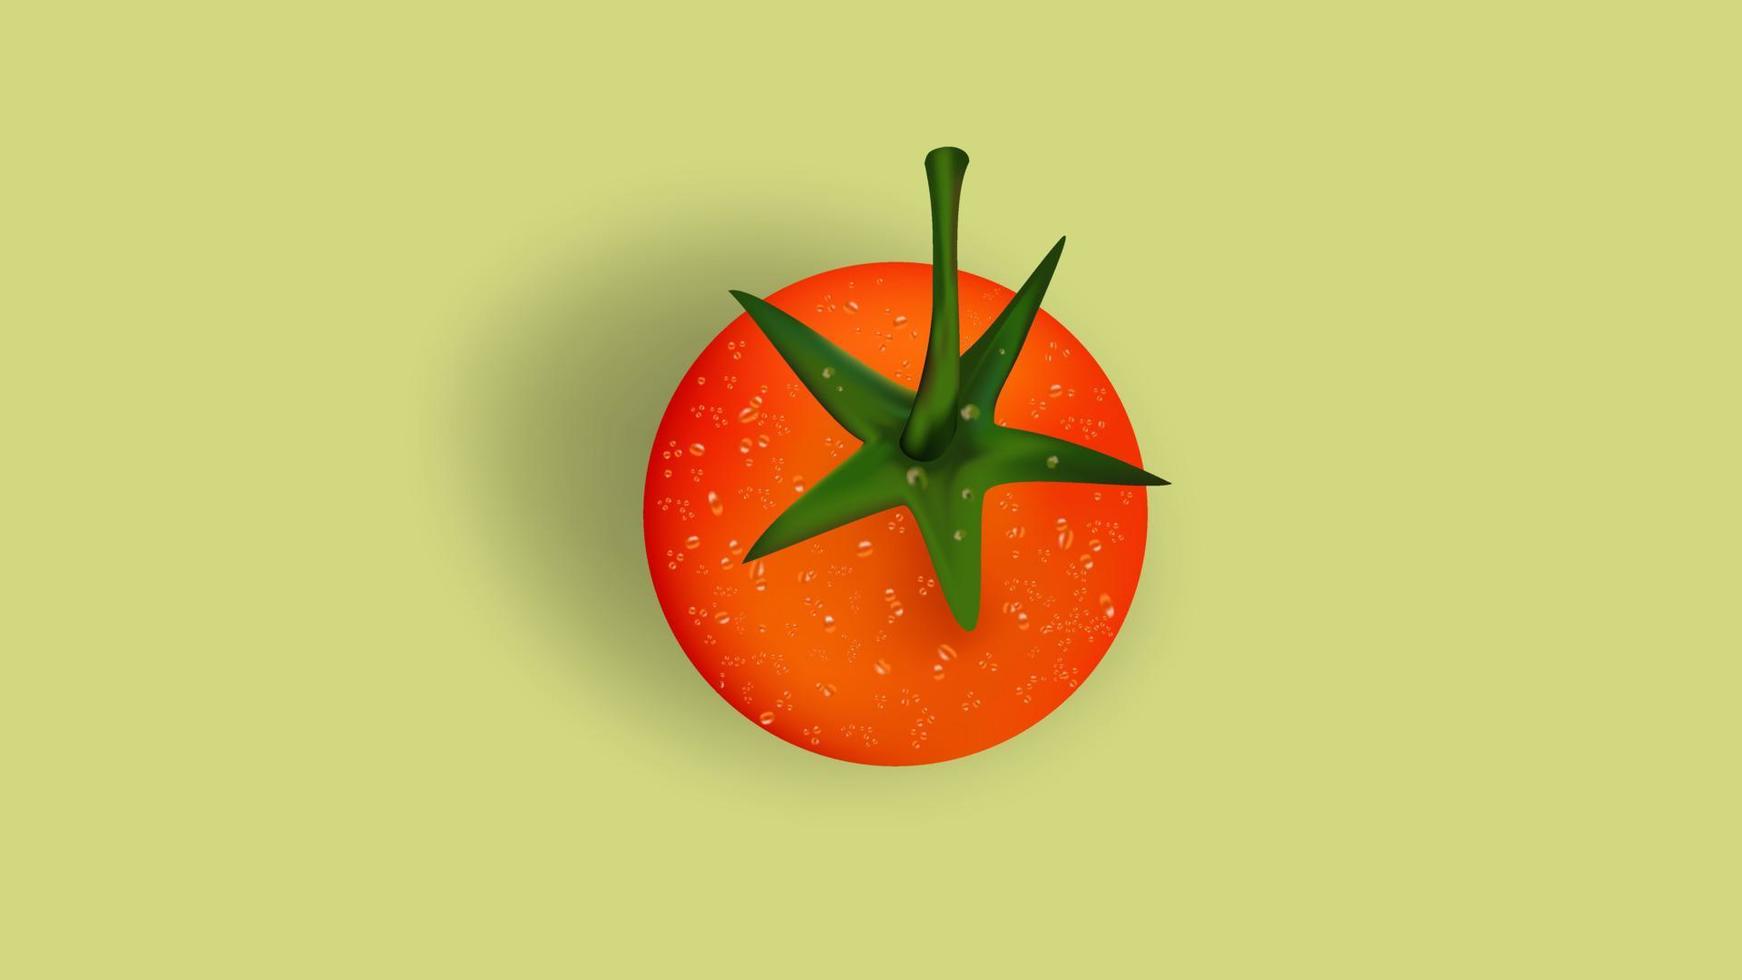 gráfico de vetor de ilustração realista de tomate usando esquema de cores laranja e verde. adequado para fazer negócios de frutas e vegetais ou design de promoção culinária